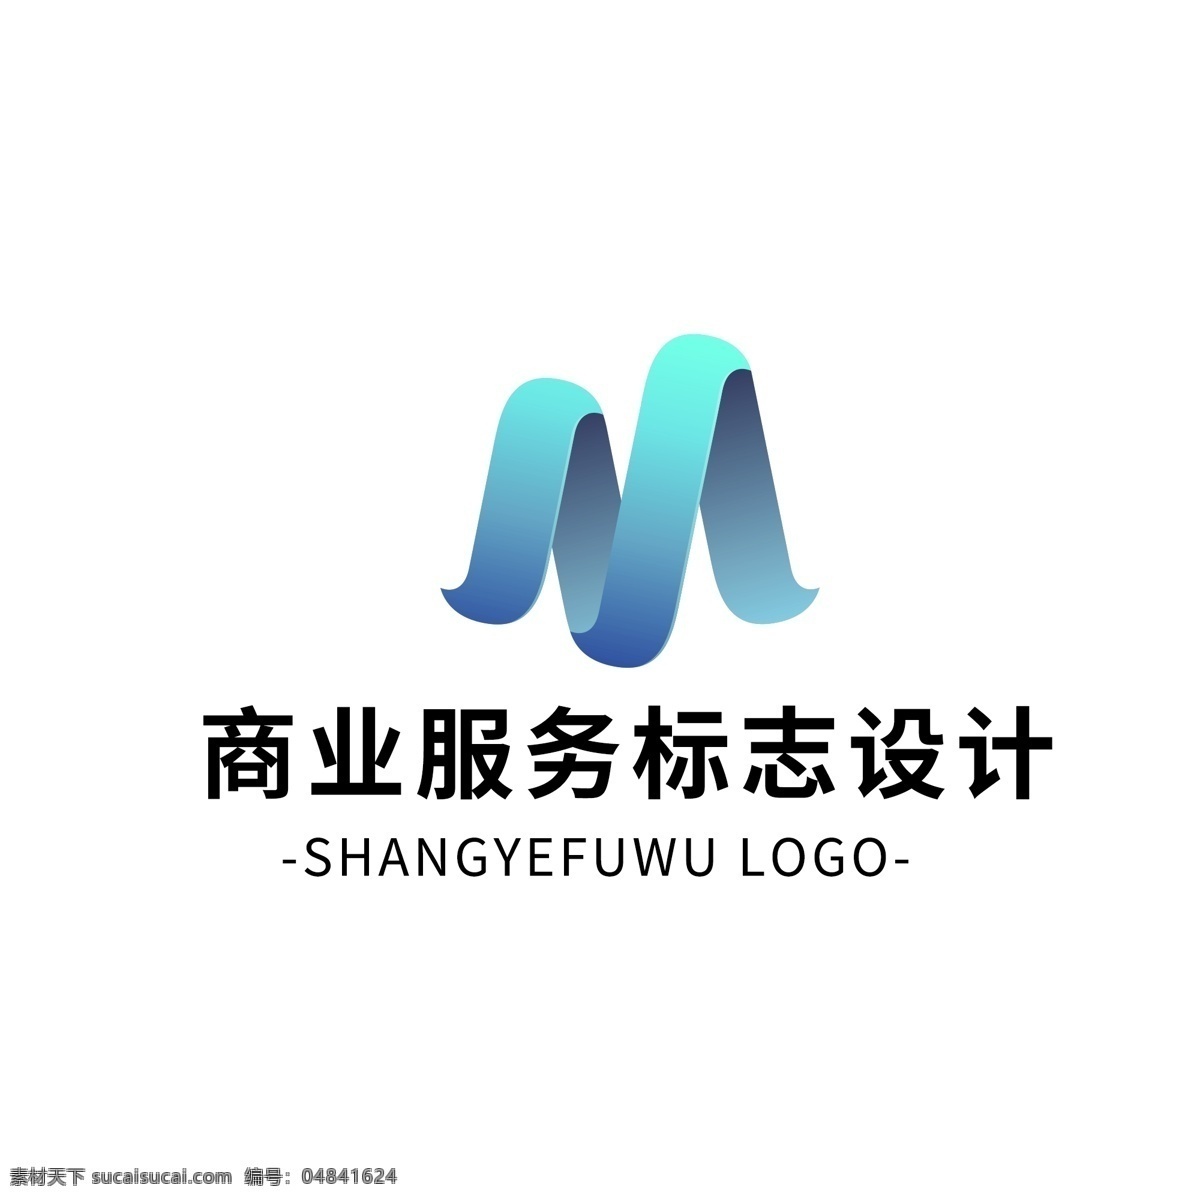 简约 大气 创意 商业服务 logo 标志设计 蓝色 渐变 图形 字母